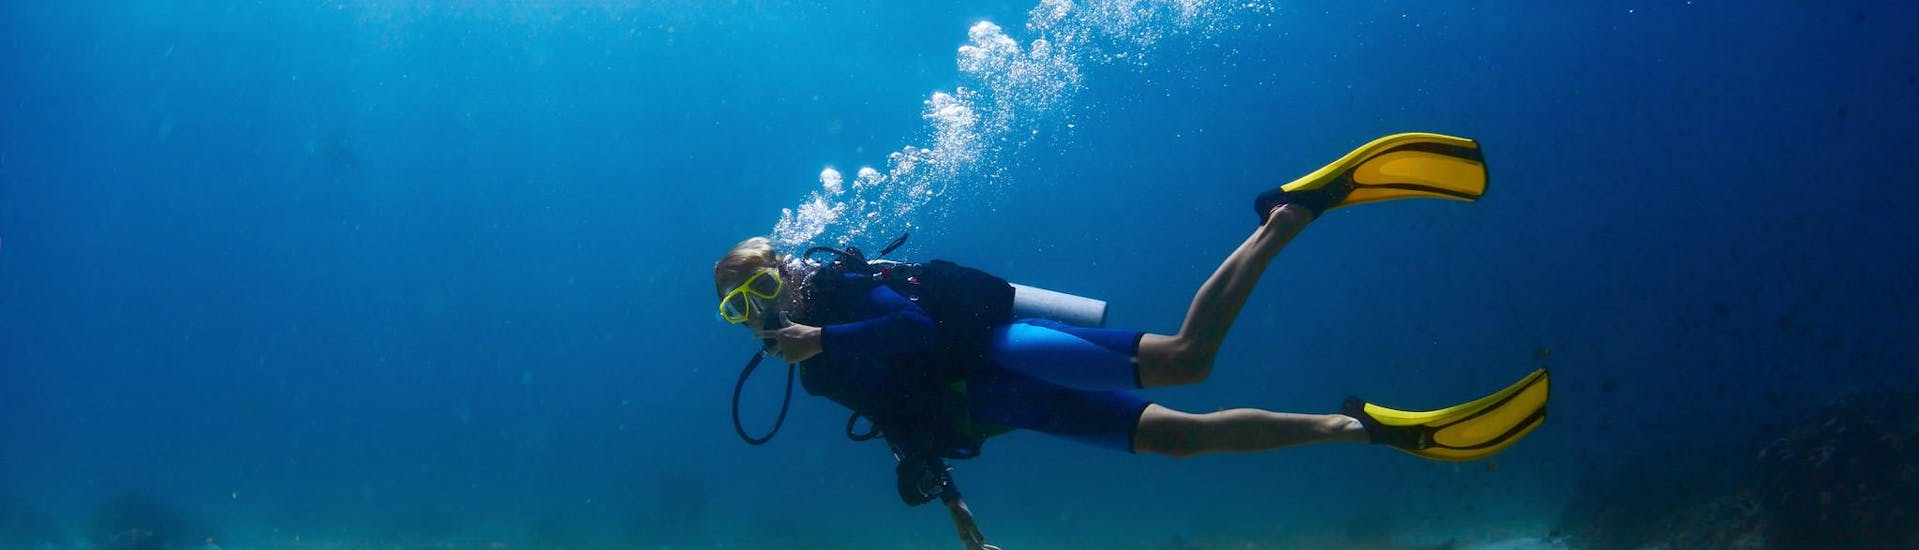 Un homme regardant l'appareil photo lors d'une activité de plongée sous-marine autour de l'île.